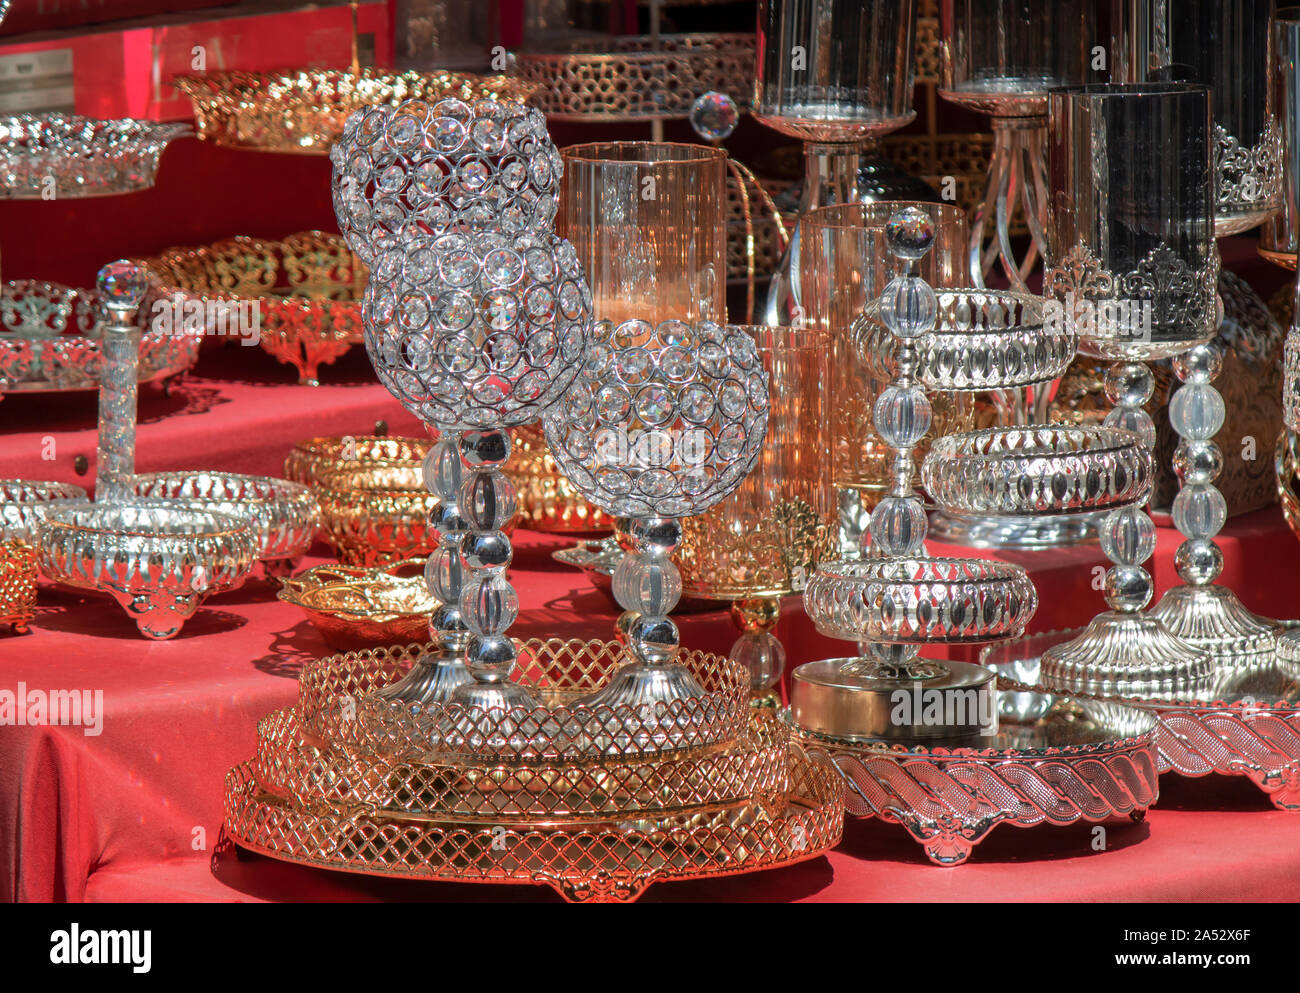 Vetro bicchieri di vino e ciotole con modelli di metallico sul bancone. Diffusione coperchio rosso sul pavimento. Foto Stock